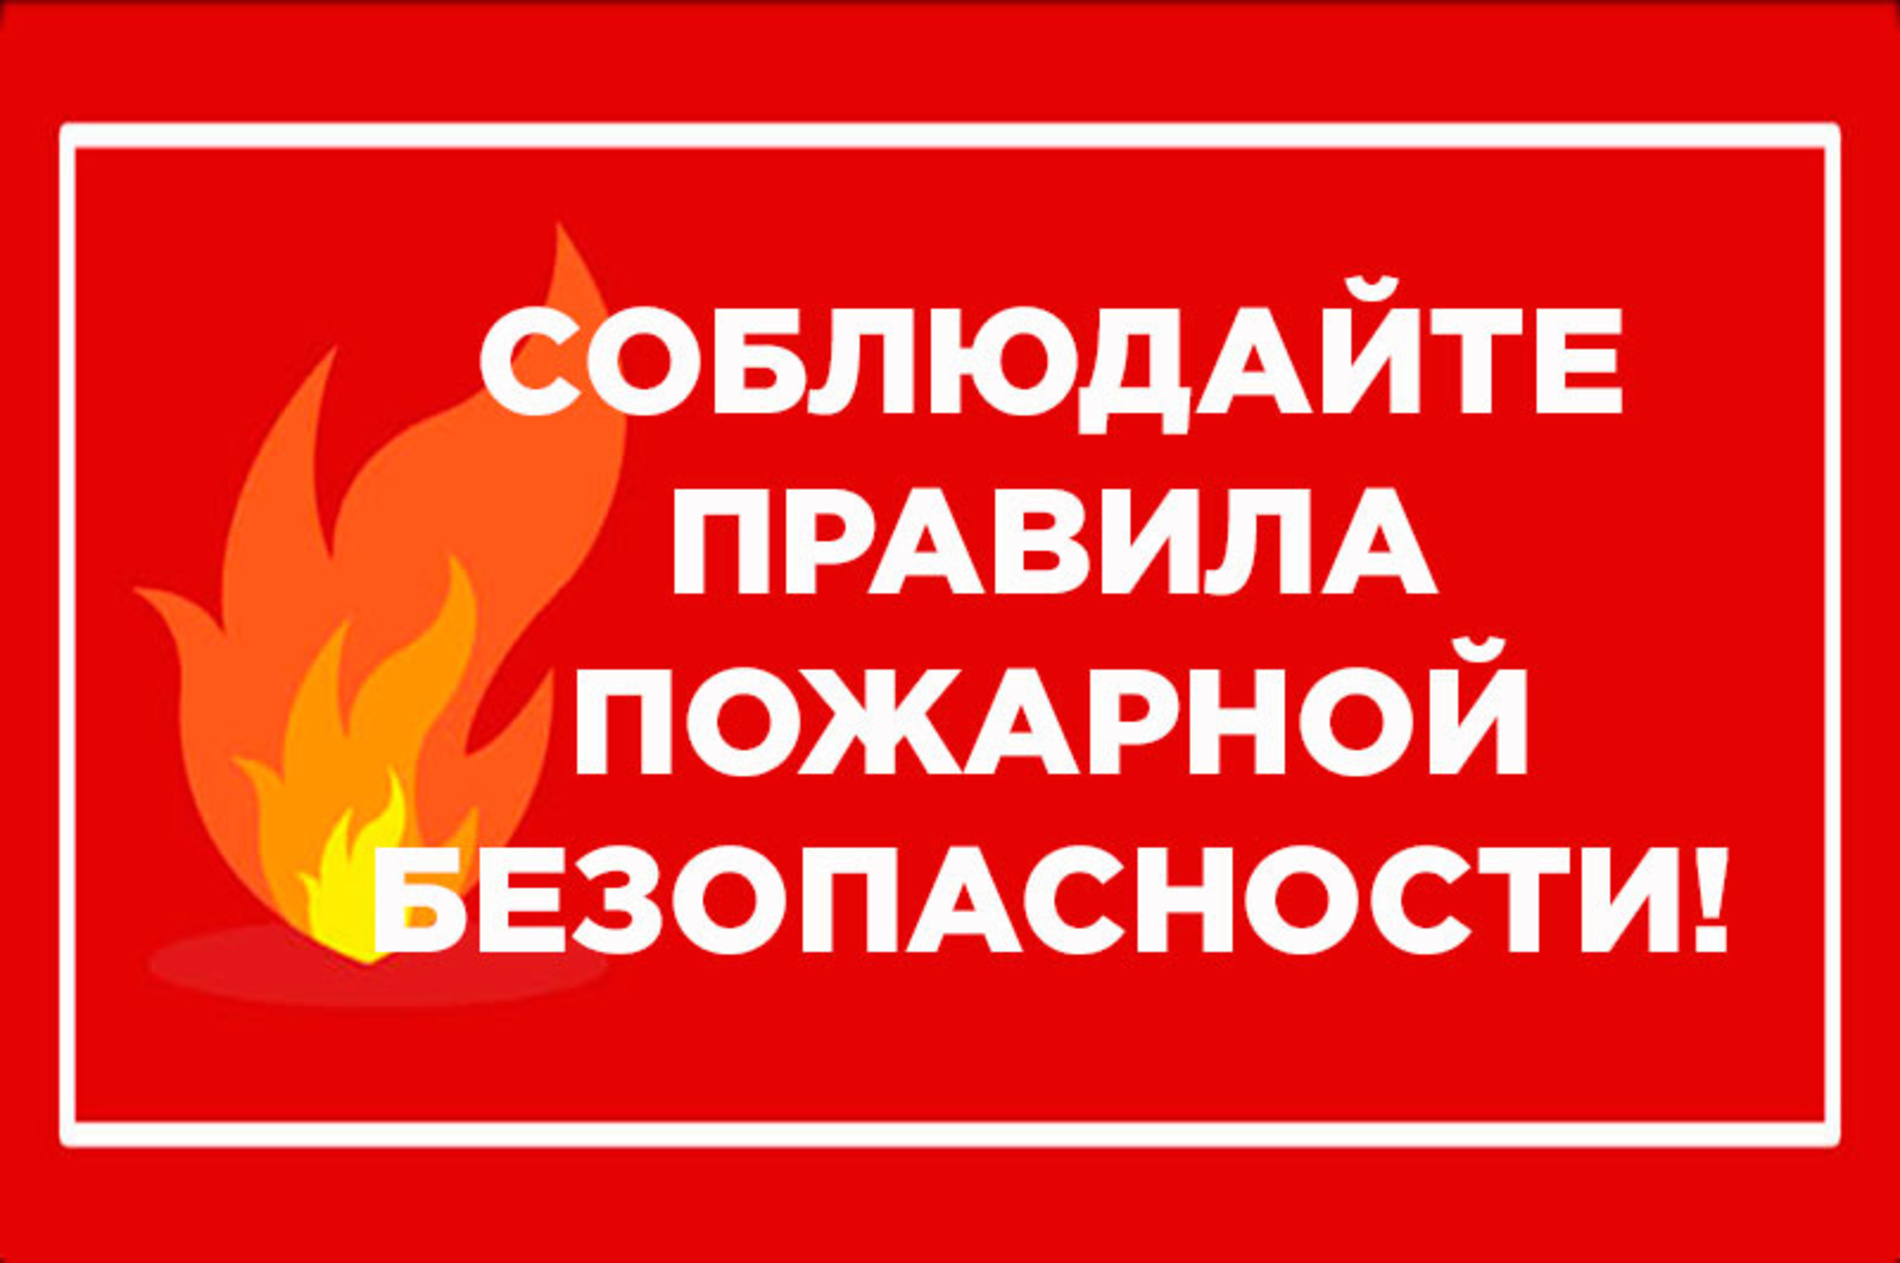 Огнеборцы 5-го Джидинского отряда ГПС РБ призывают жителей Джидинского района соблюдать следующие правила пожарной безопасности при эксплуатации печного отопления.